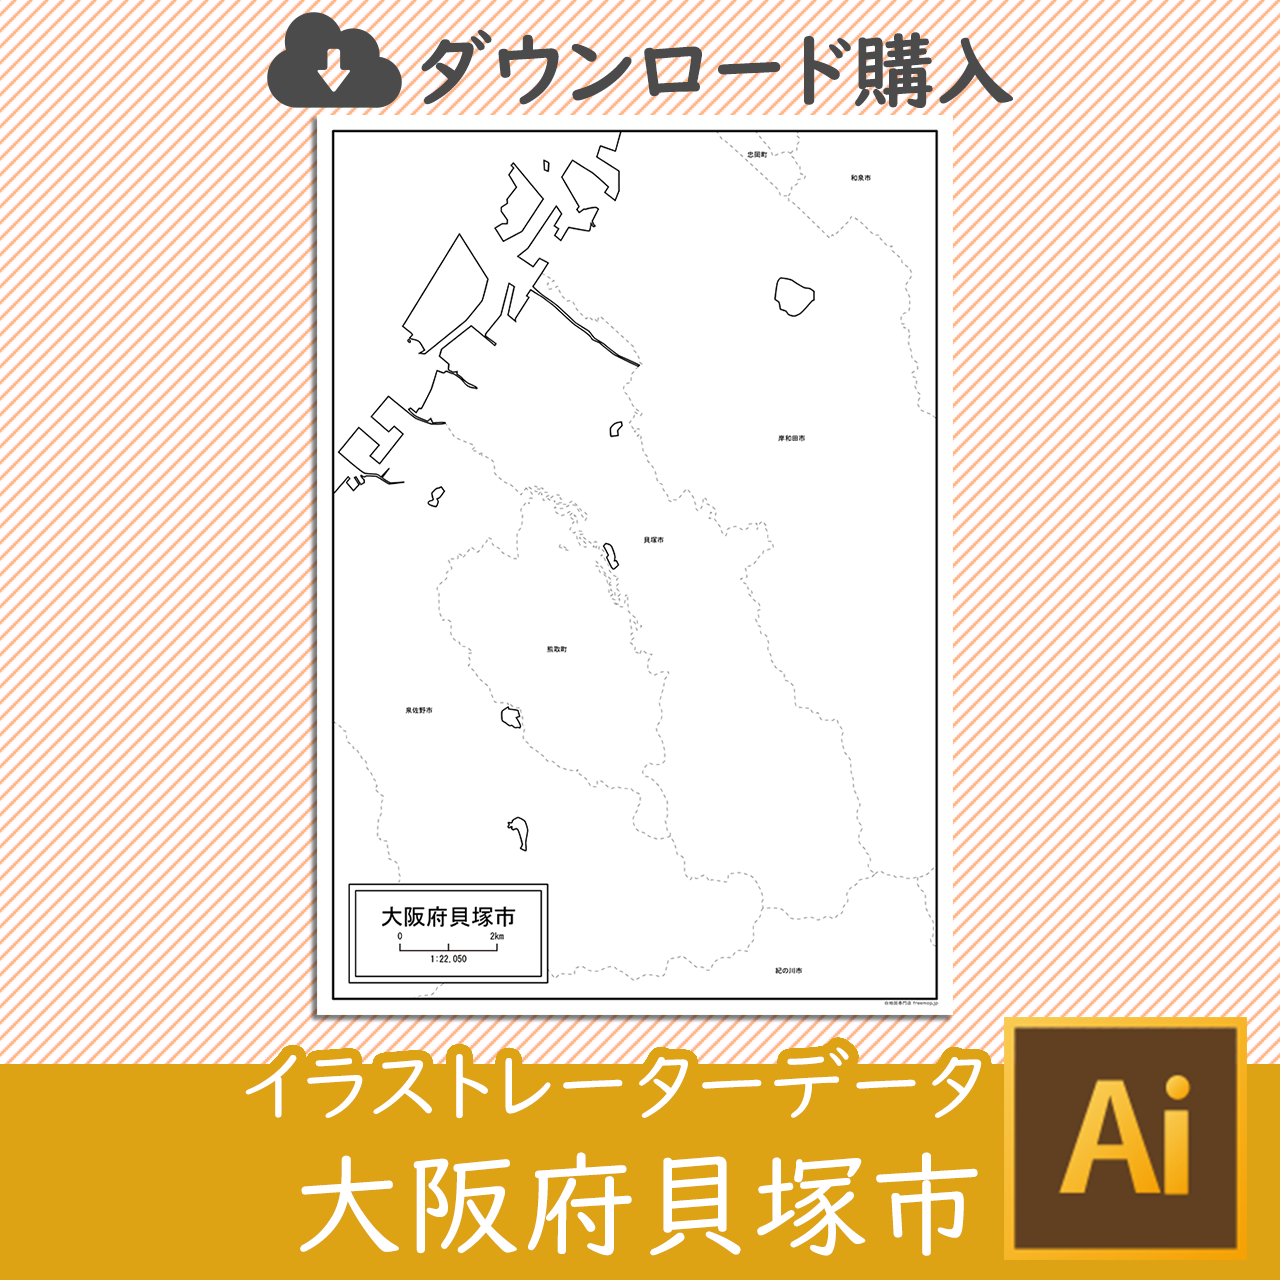 貝塚市のaiデータのサムネイル画像